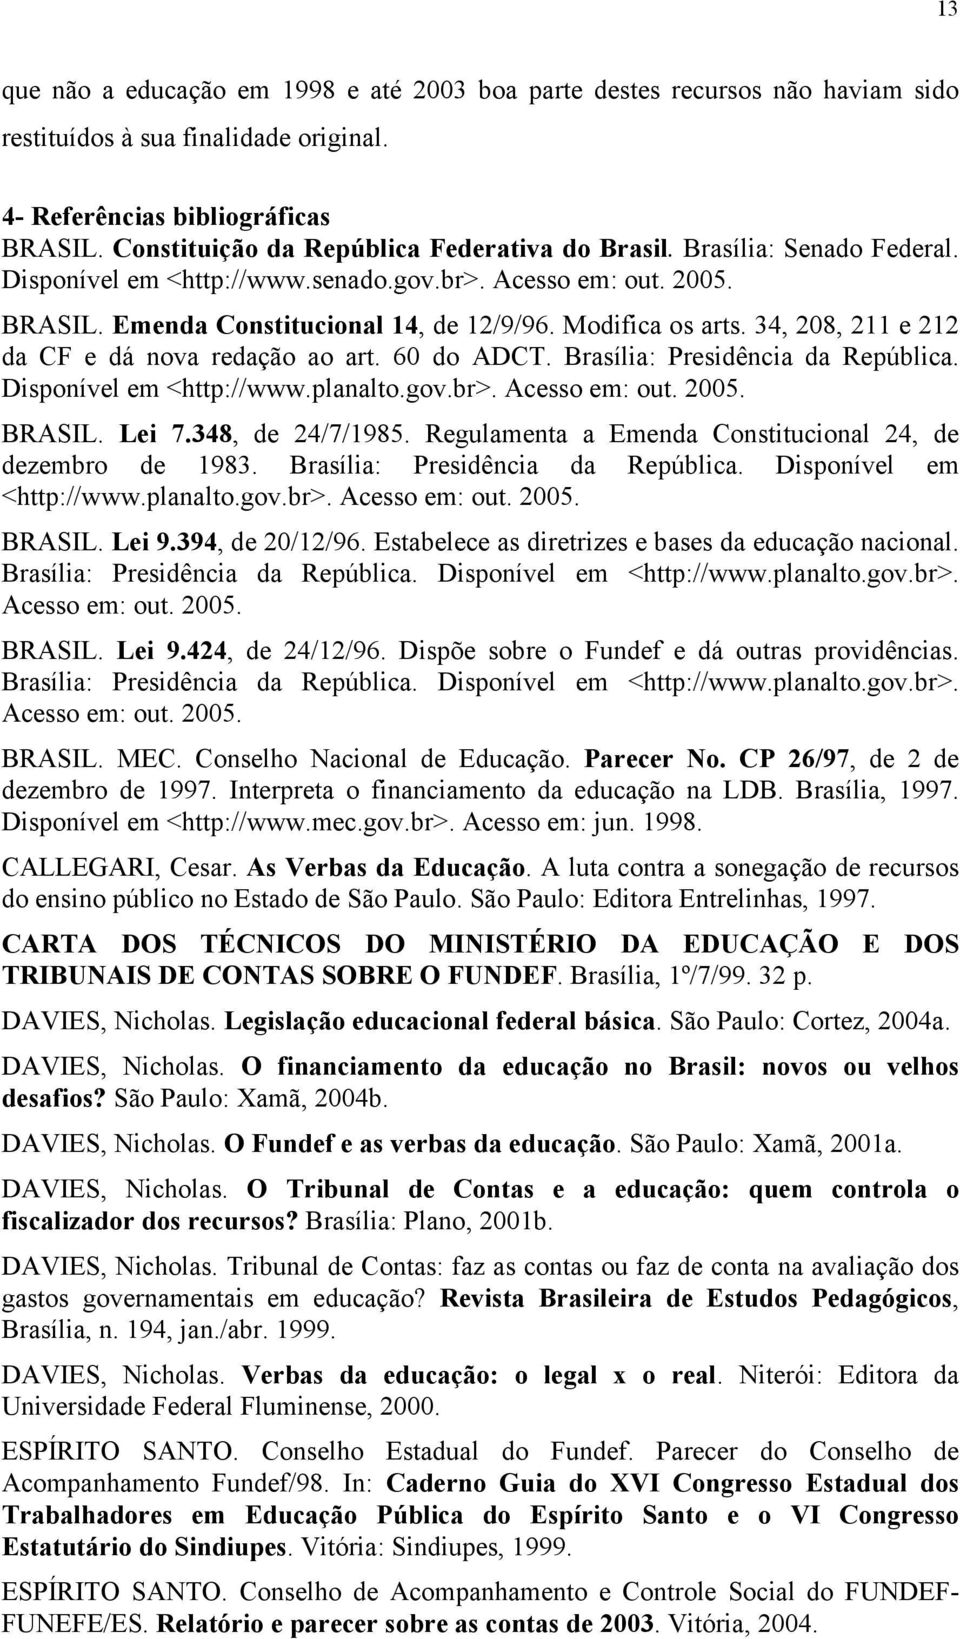 Modifica os arts. 34, 208, 211 e 212 da CF e dá nova redação ao art. 60 do ADCT. Brasília: Presidência da República. Disponível em <http://www.planalto.gov.br>. Acesso em: out. 2005. BRASIL. Lei 7.